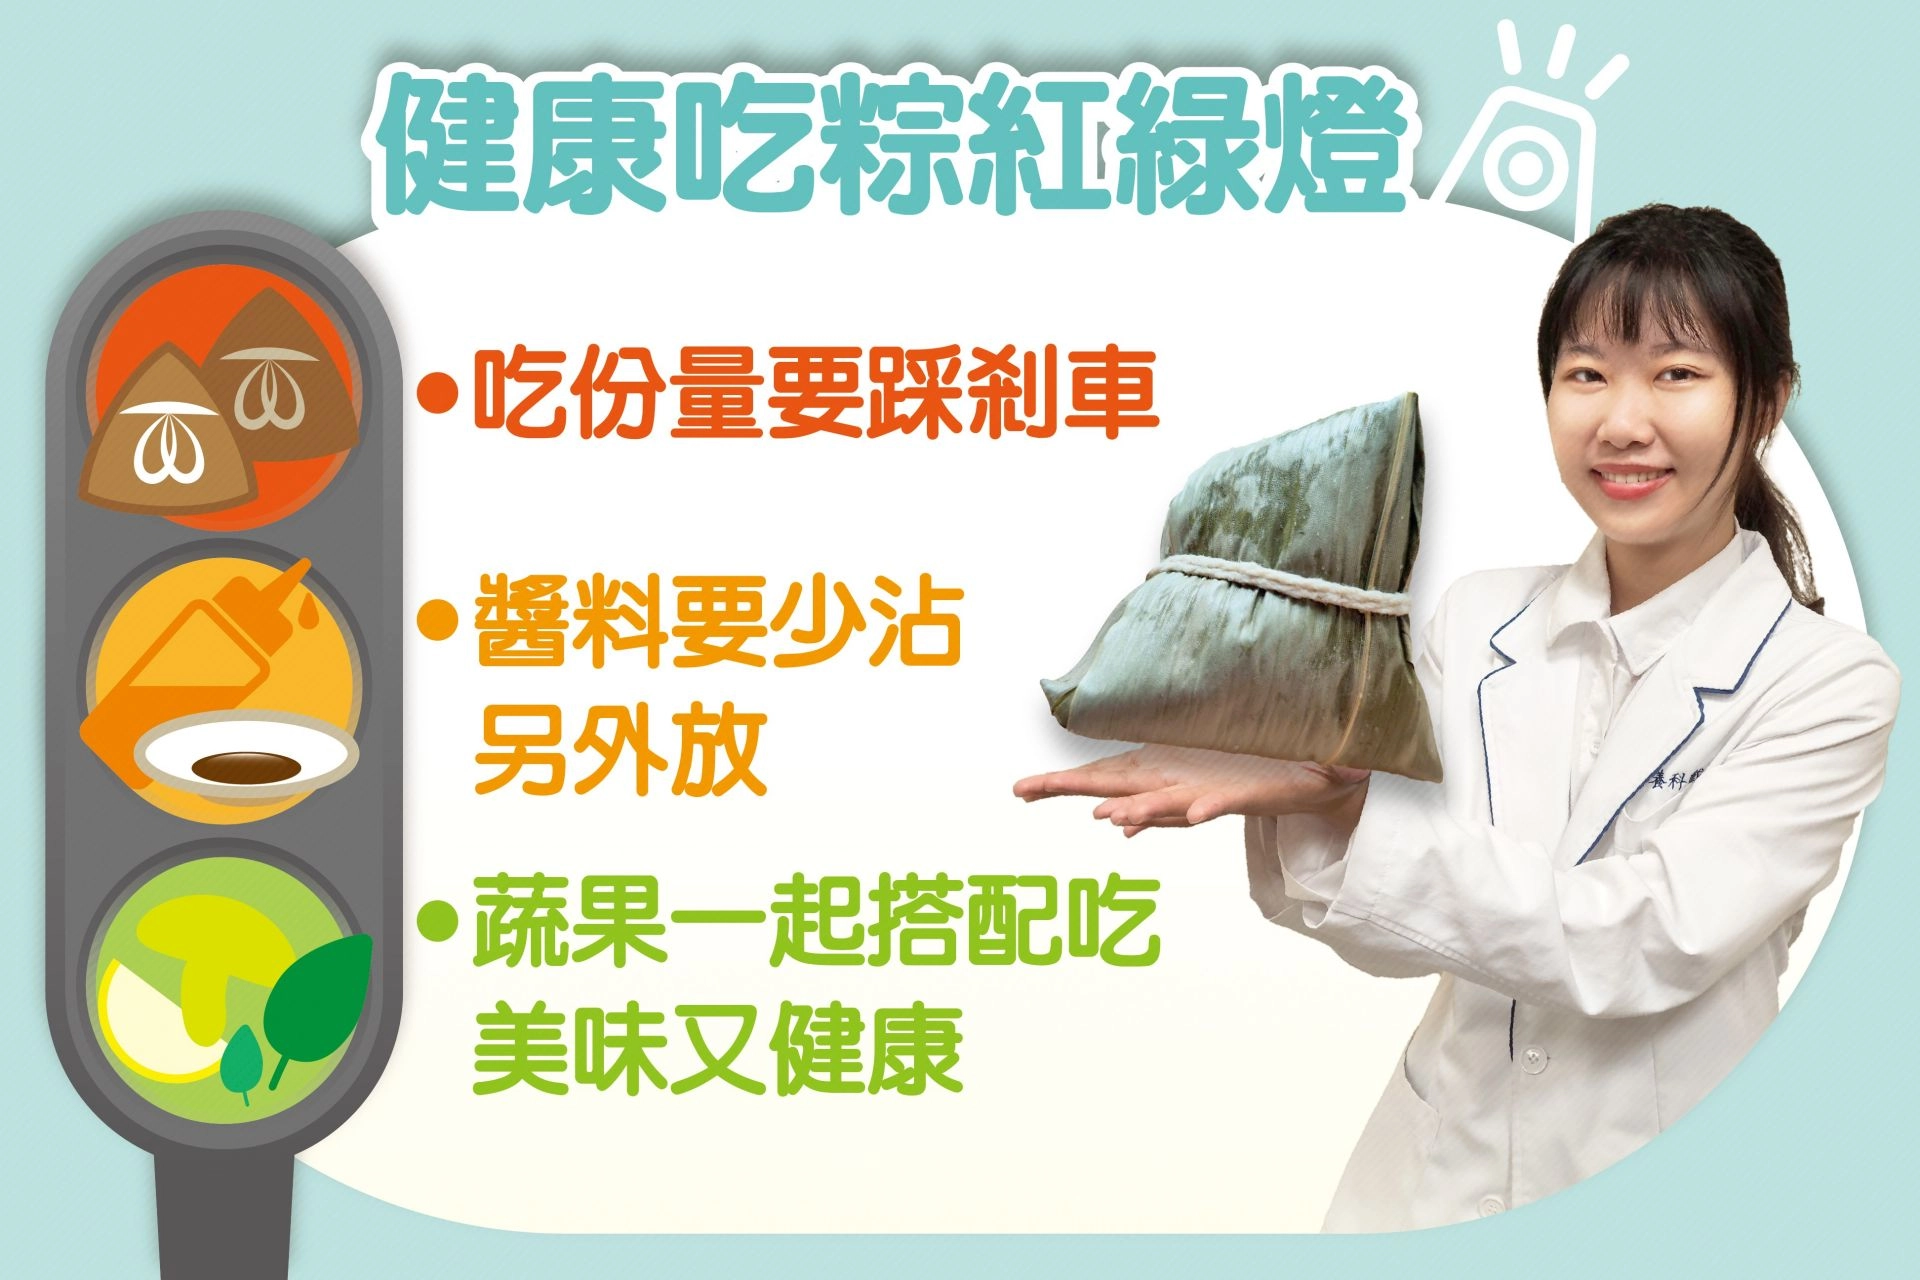 戴聖玉營養師提供「建康吃粽紅綠燈」原則，讓民眾可以健康開心吃粽子。